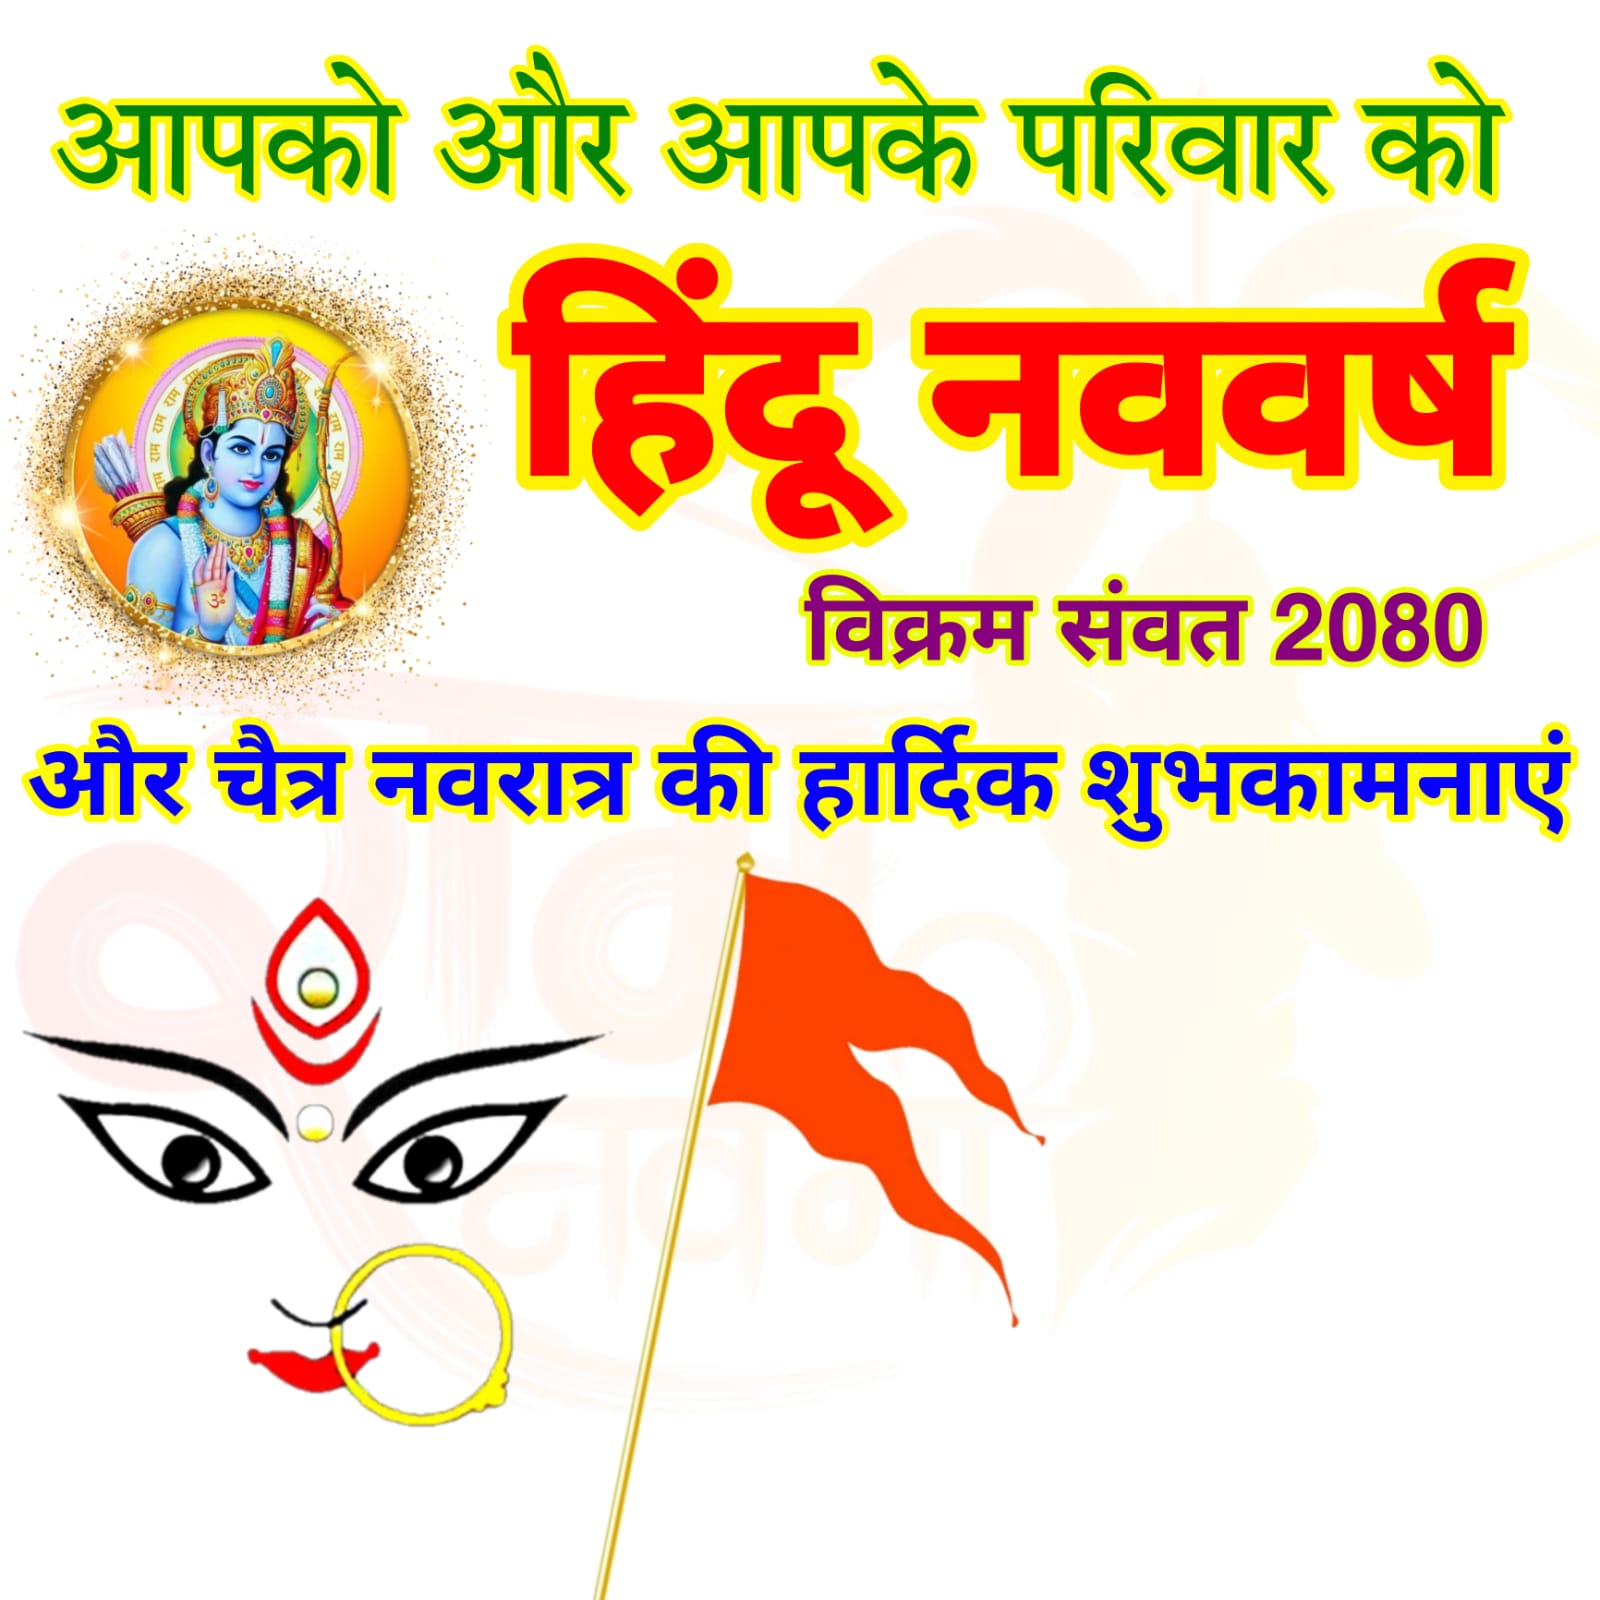 हिंदू नव वर्ष और नवरात्रि की हार्दिक शुभकामनाएं